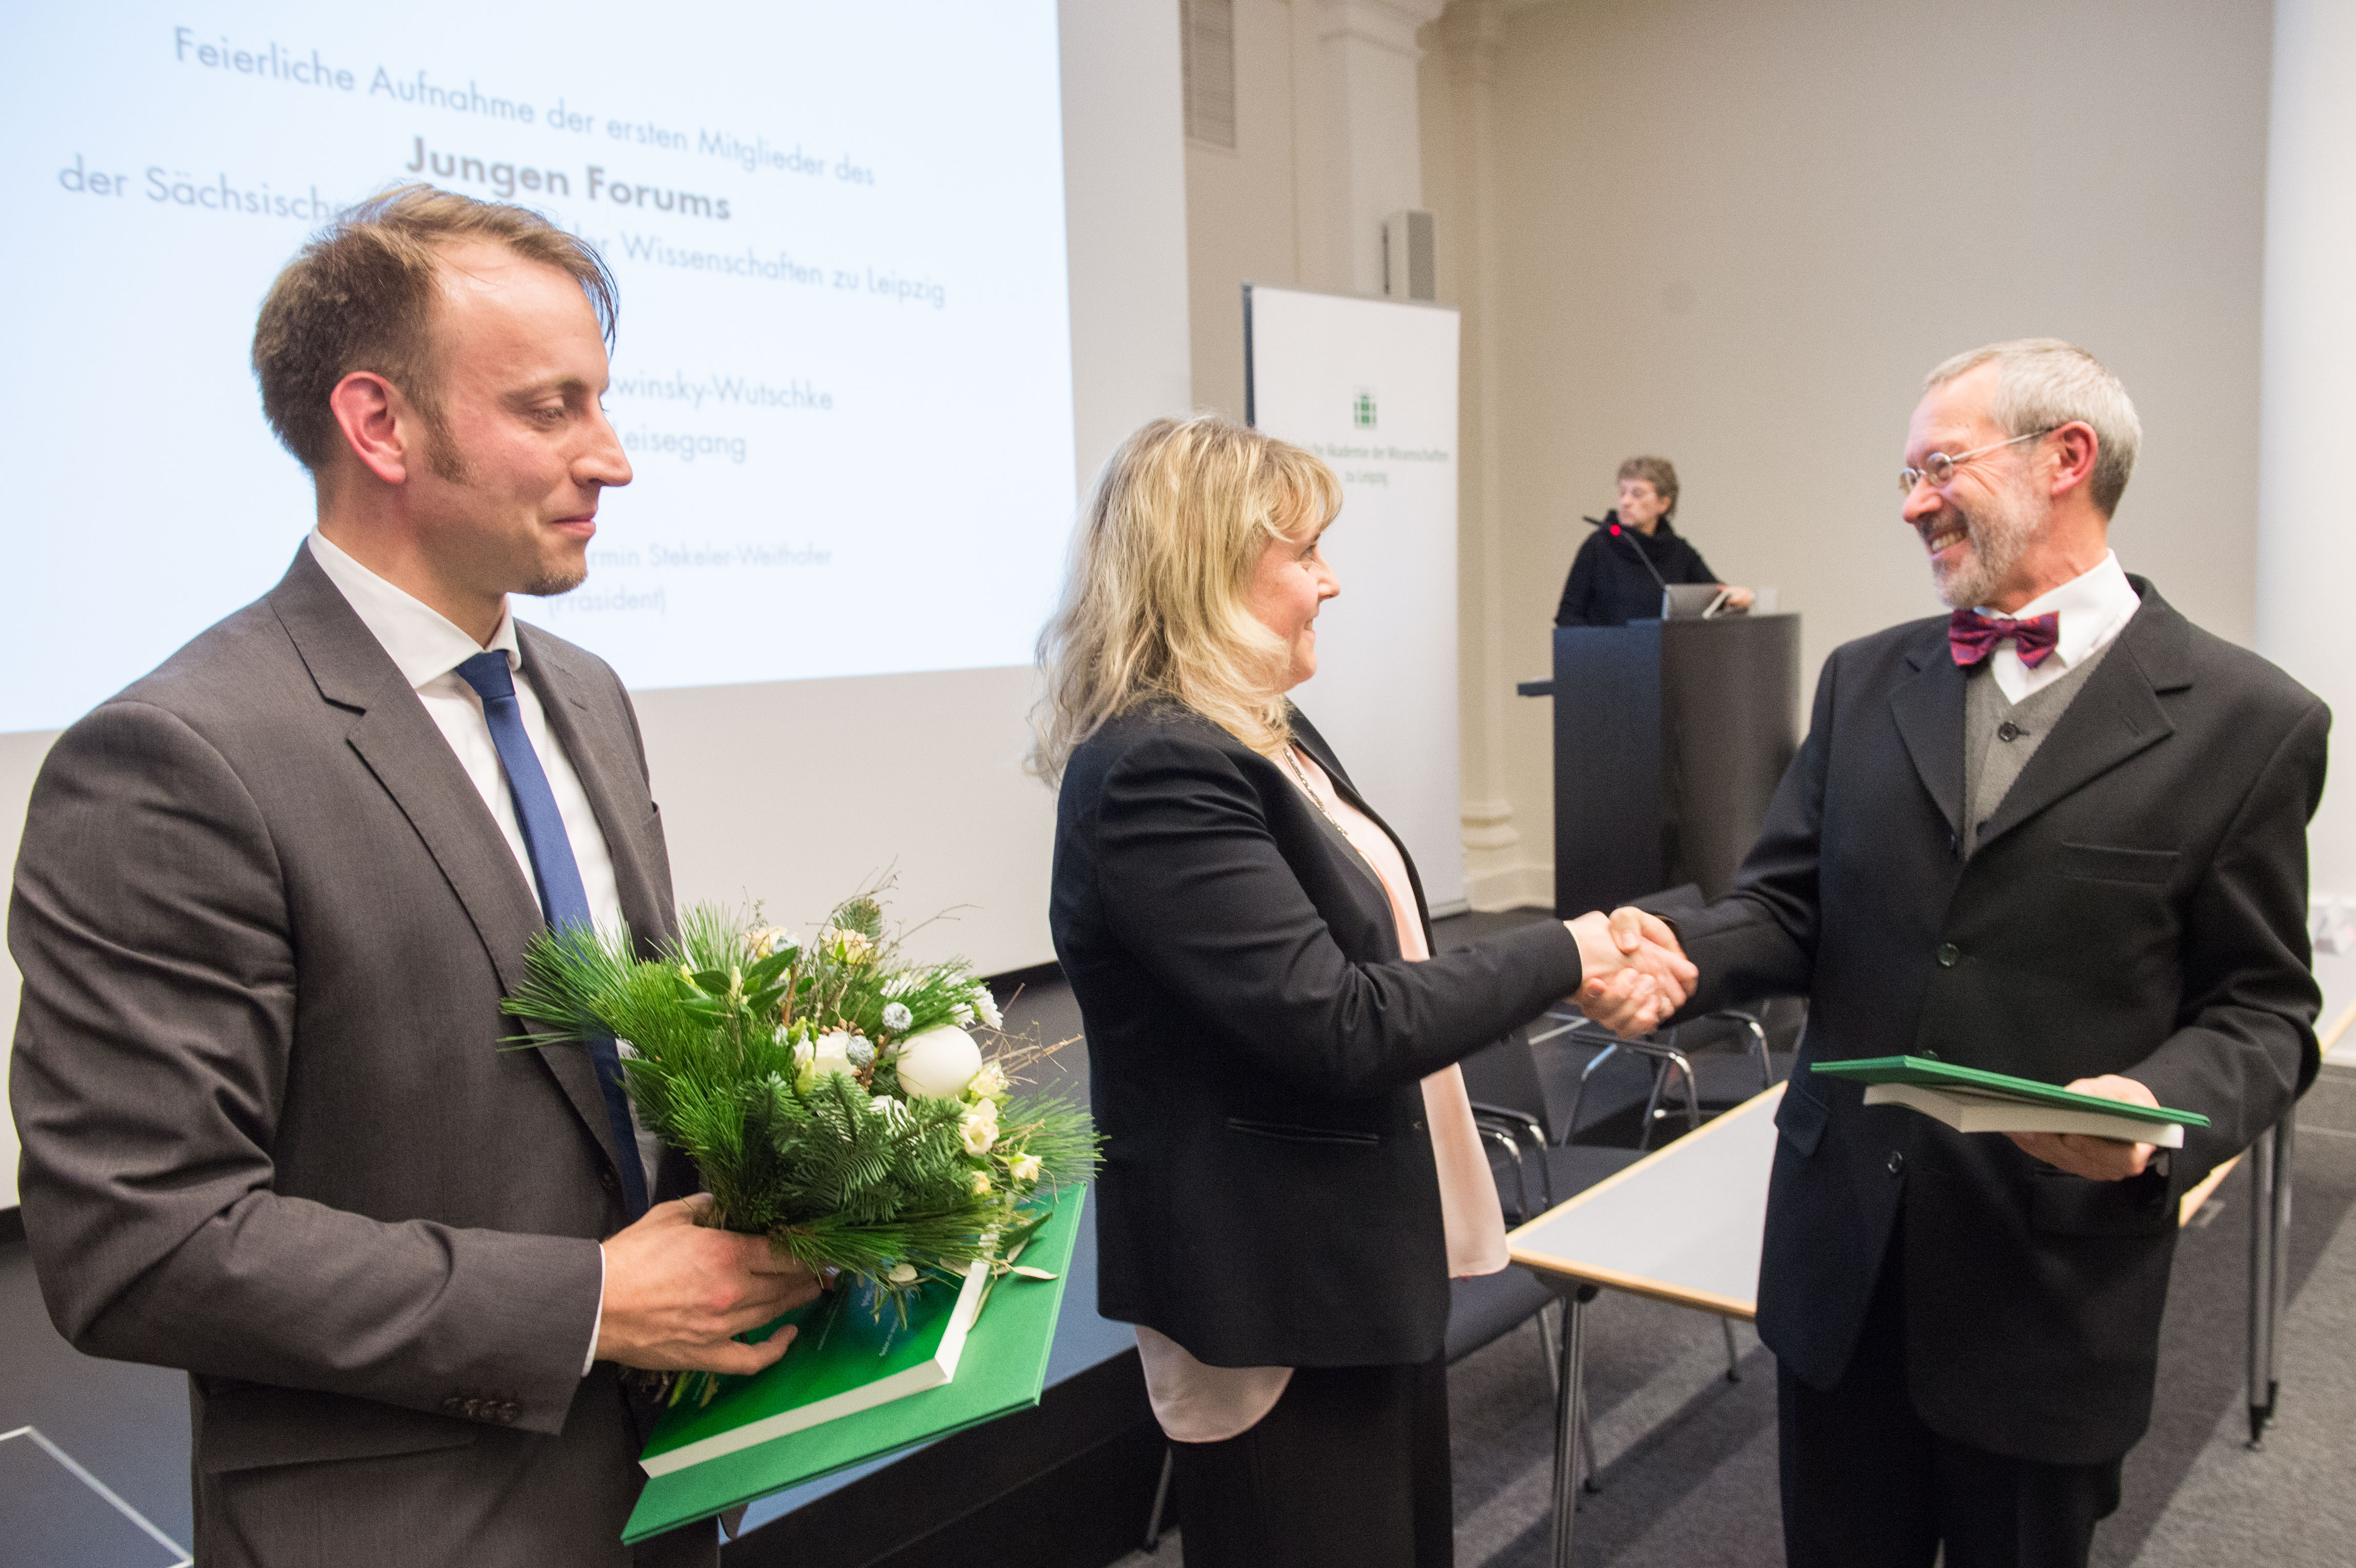 Pirmin Stekeler-Weithofer, Präsident der Sächsischen Akademie der Wissenschaften (r.), gratuliert Ivonne Bazwinksy-Wutschke zur Aufnahme in das Junge Forum. Neben ihr wurde auch Tilmann Leisegang von der TU Freiberg aufgenommen.